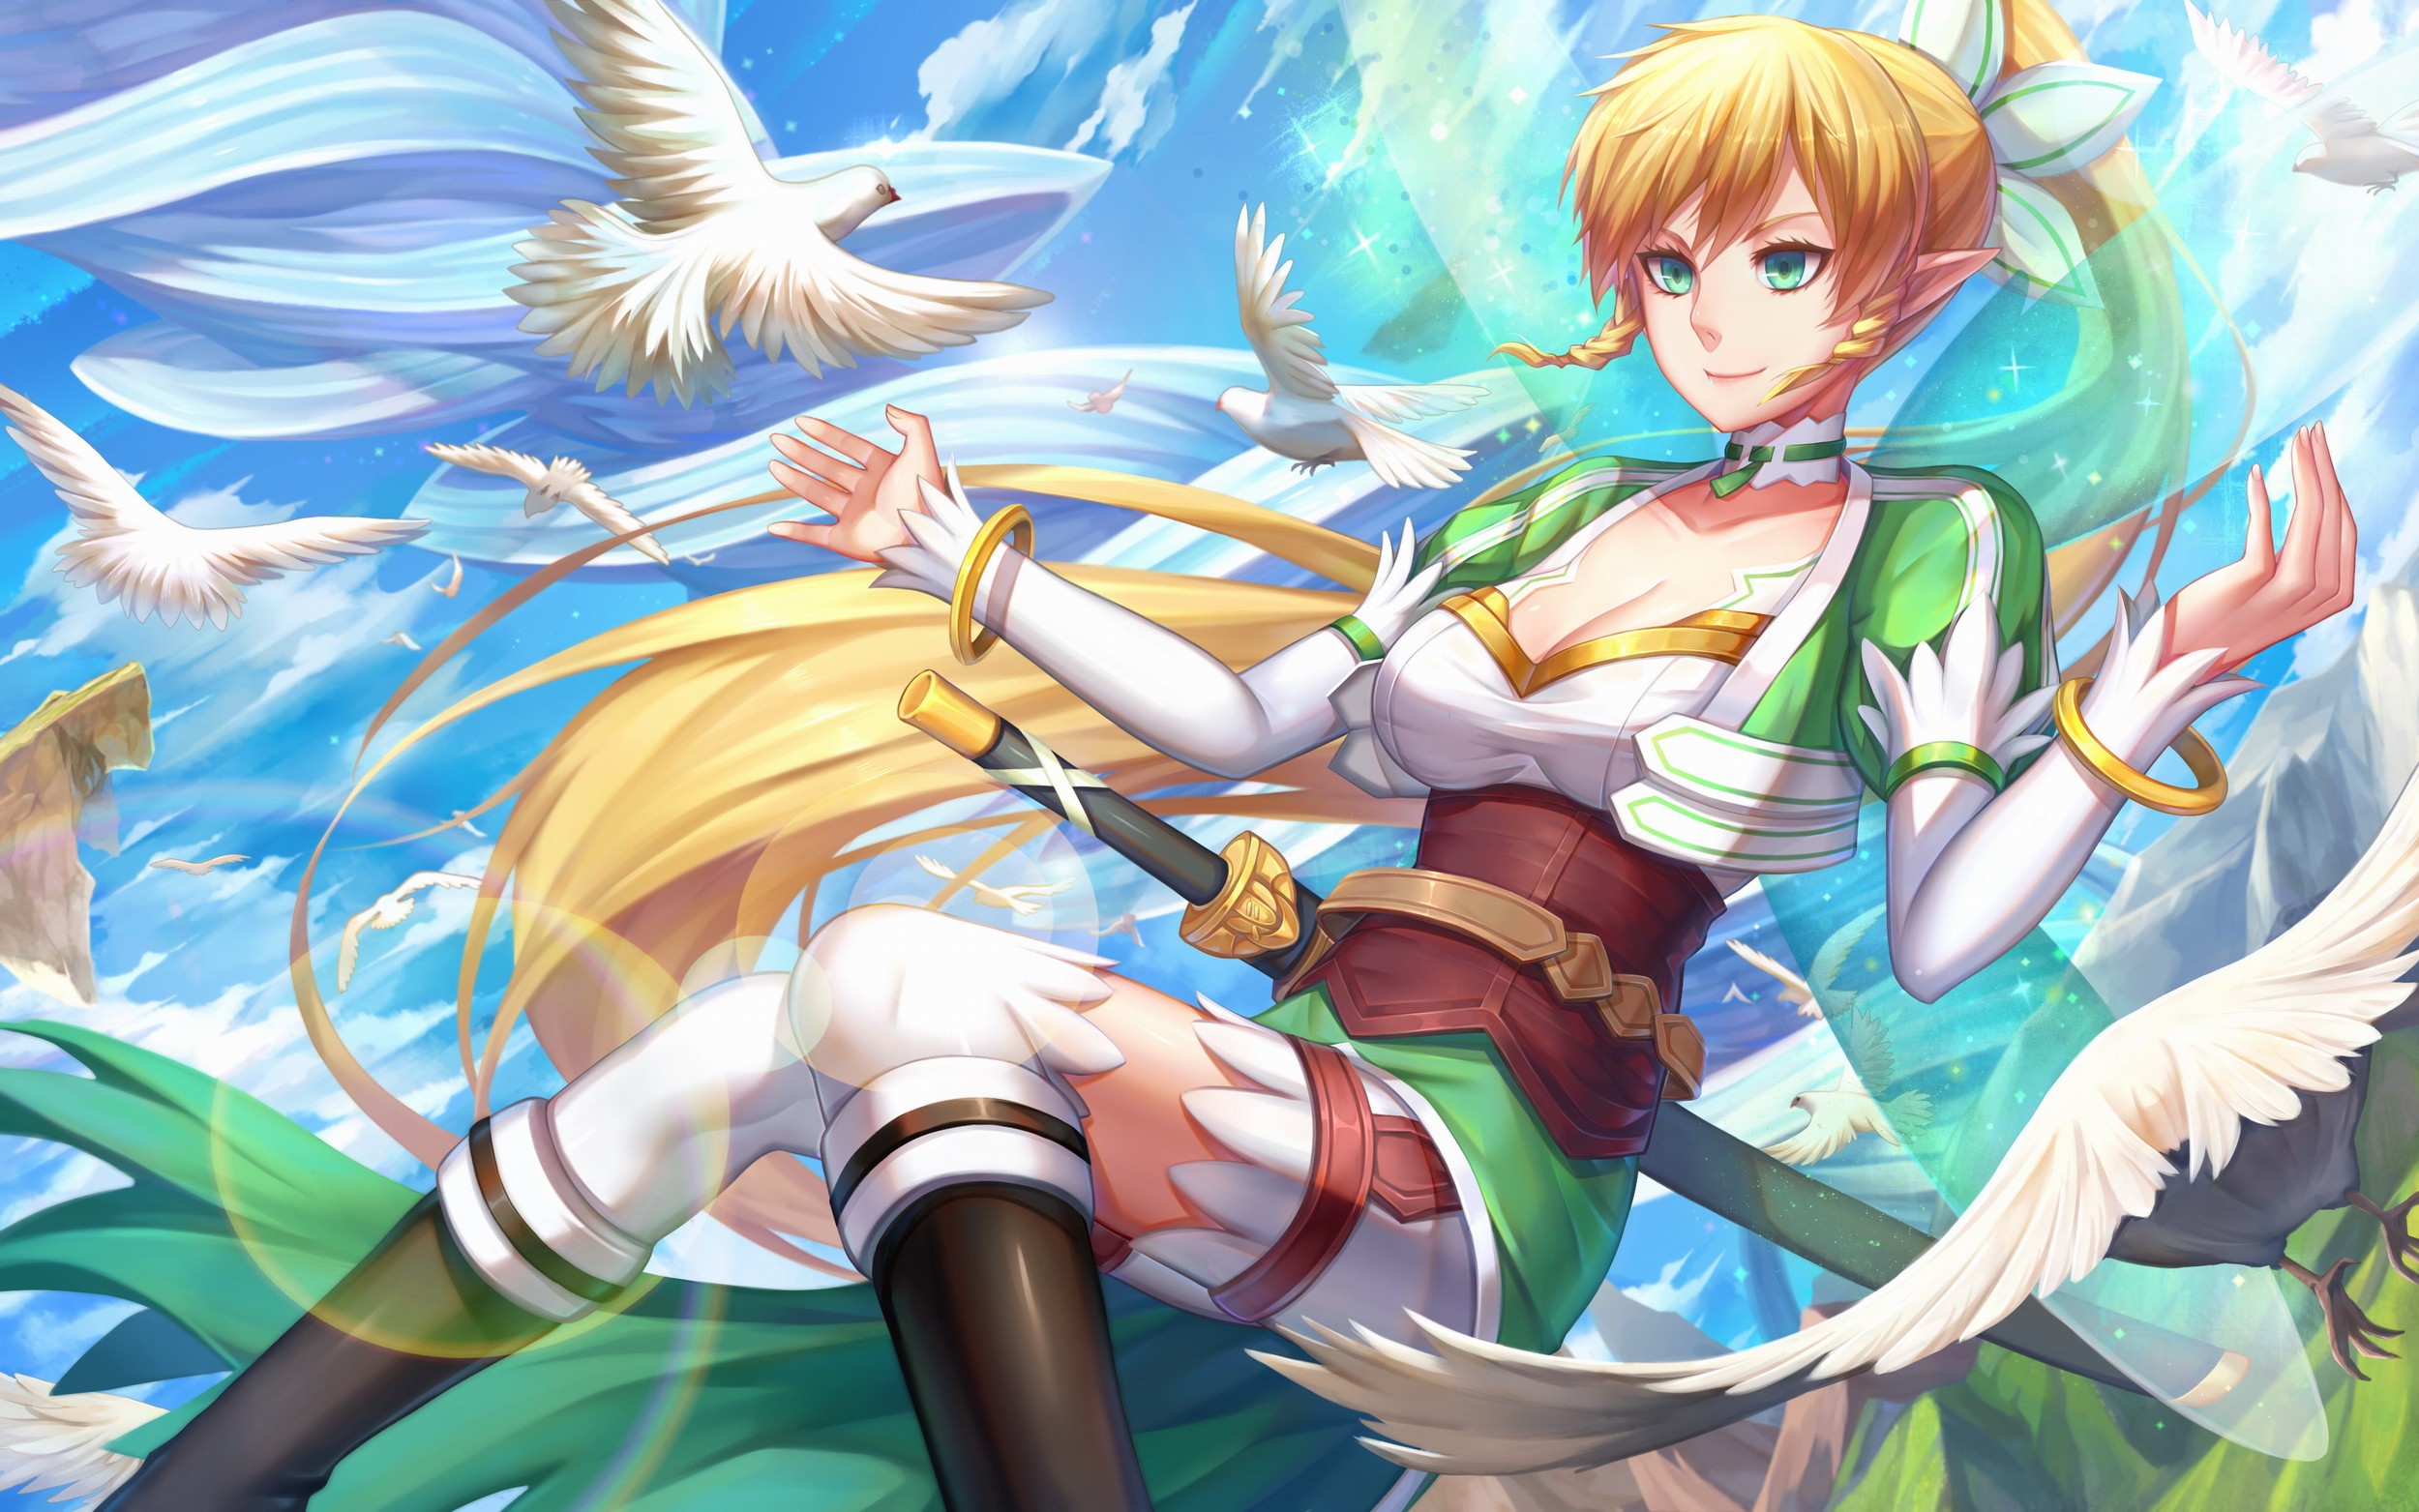 Anime 2500x1563 anime anime girls Sword Art Online long hair blonde elves sword weapon birds